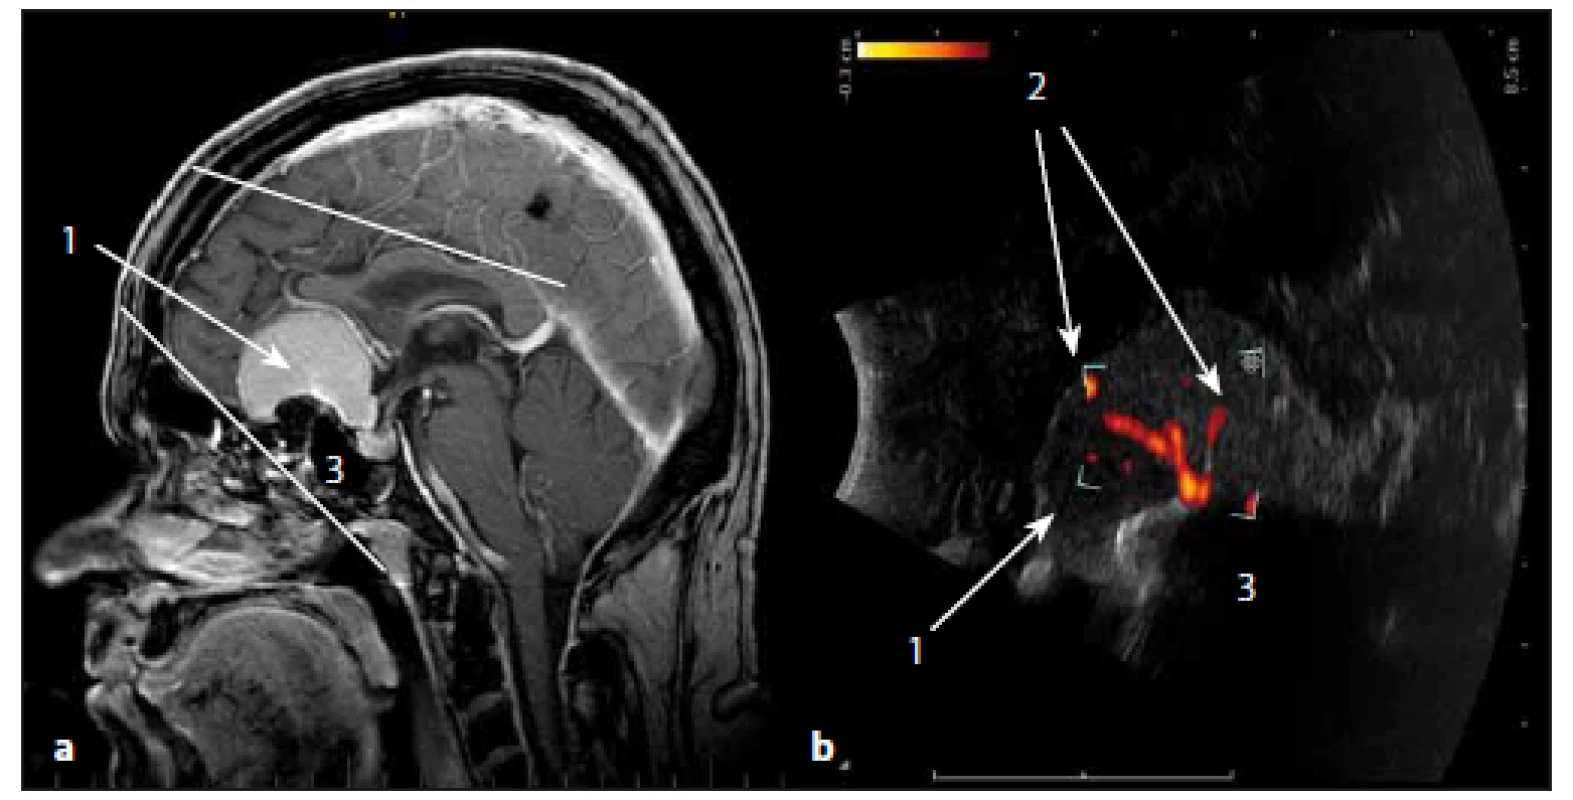 Sonografické duplexní zobrazení cévního zásobení meningeomu čichové rýhy.
Fig. 13. The ultrasound duplex image of arterial supply of olfactory meningioma.